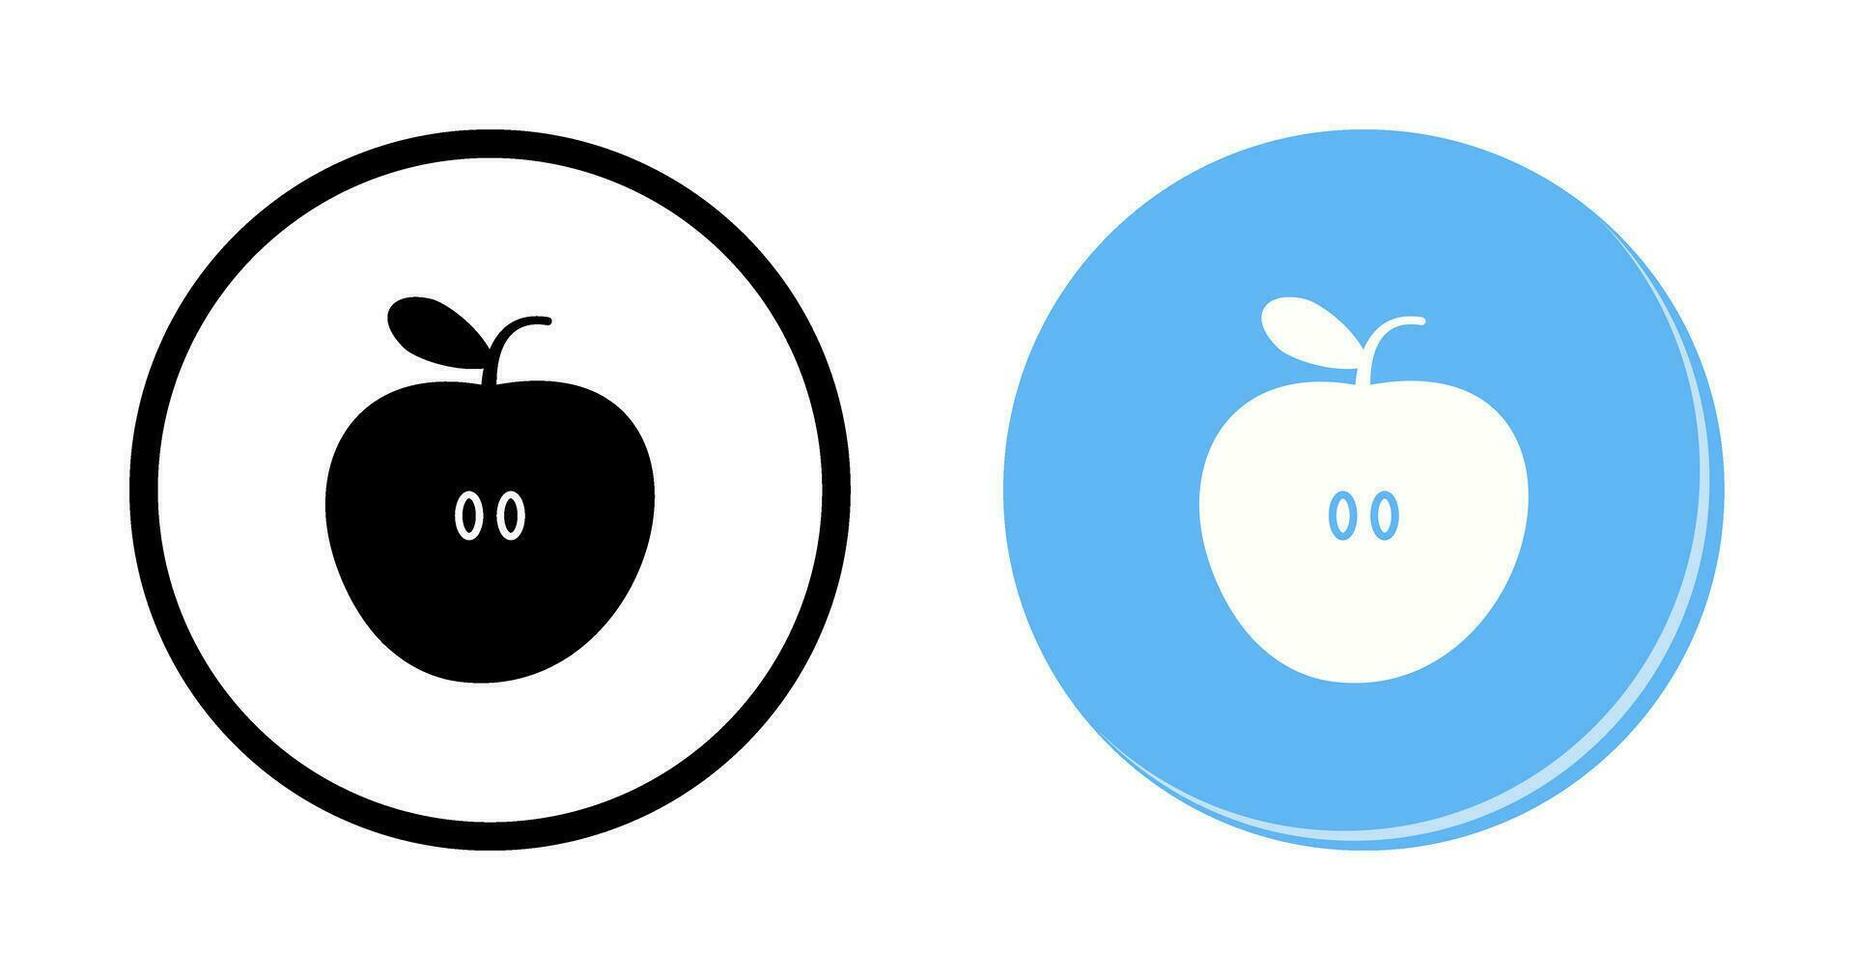 icône de vecteur de pommes